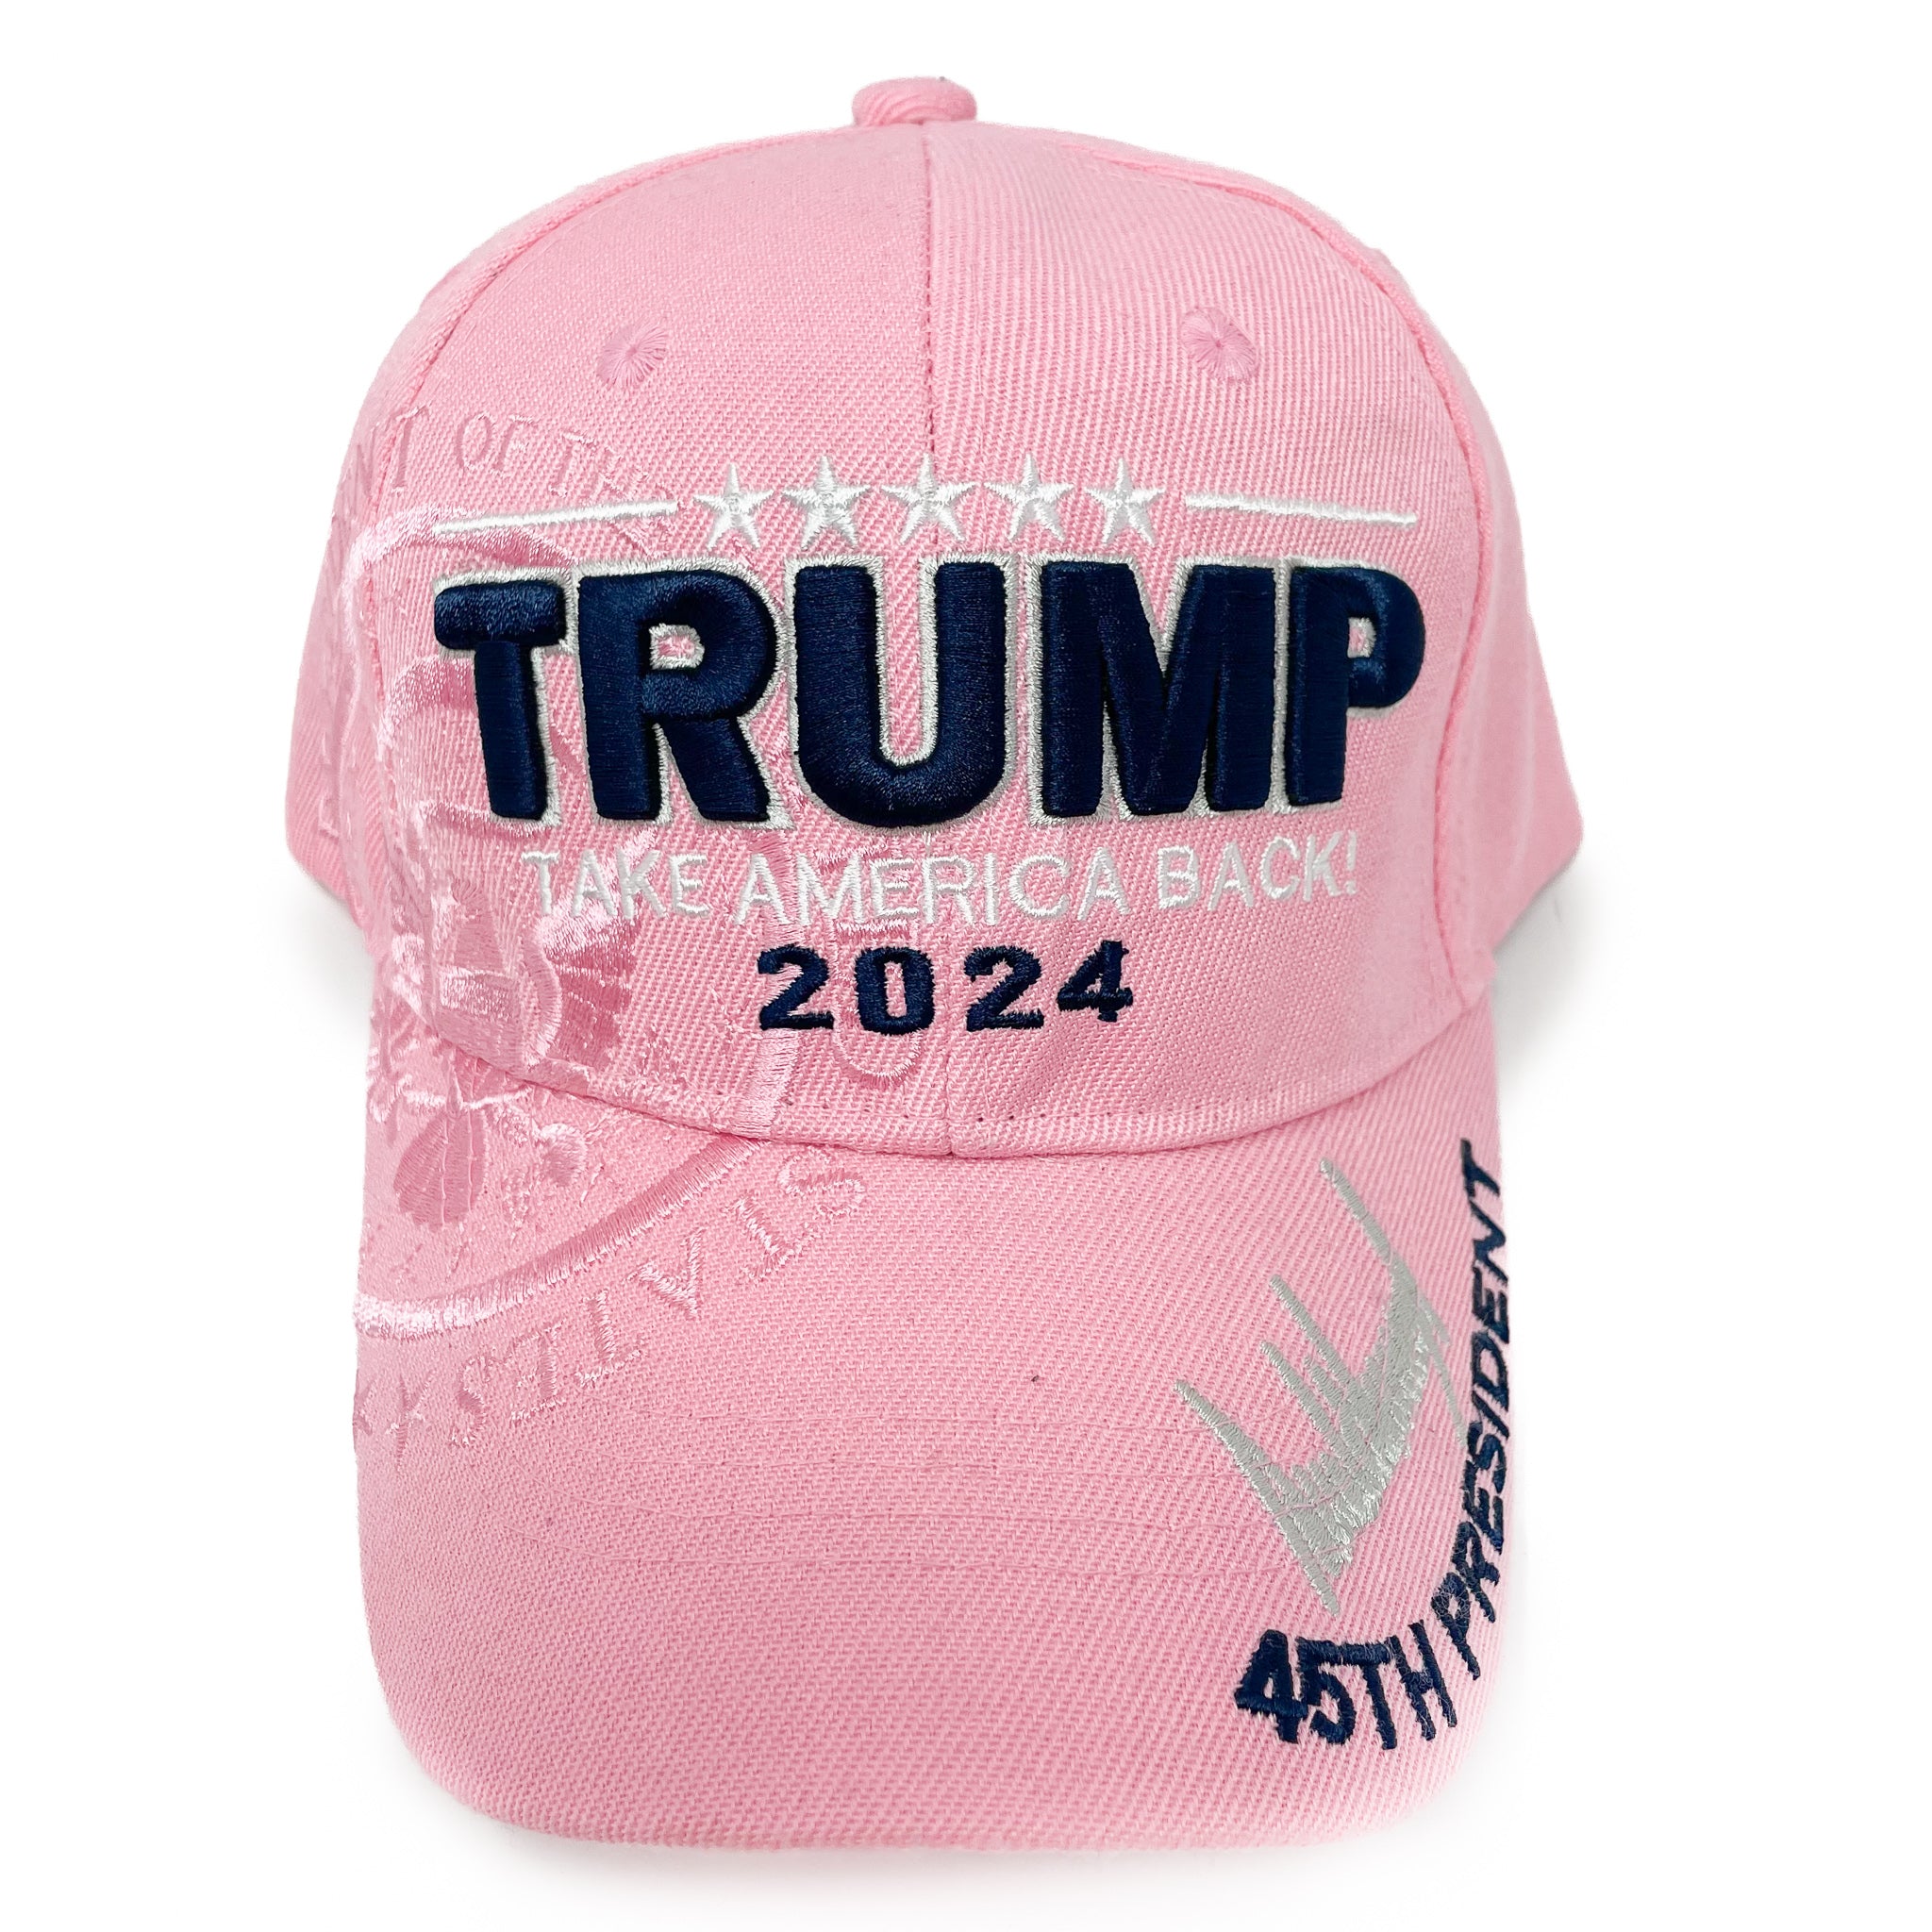 Trump 'Take America Back' Cap (3 Colors)